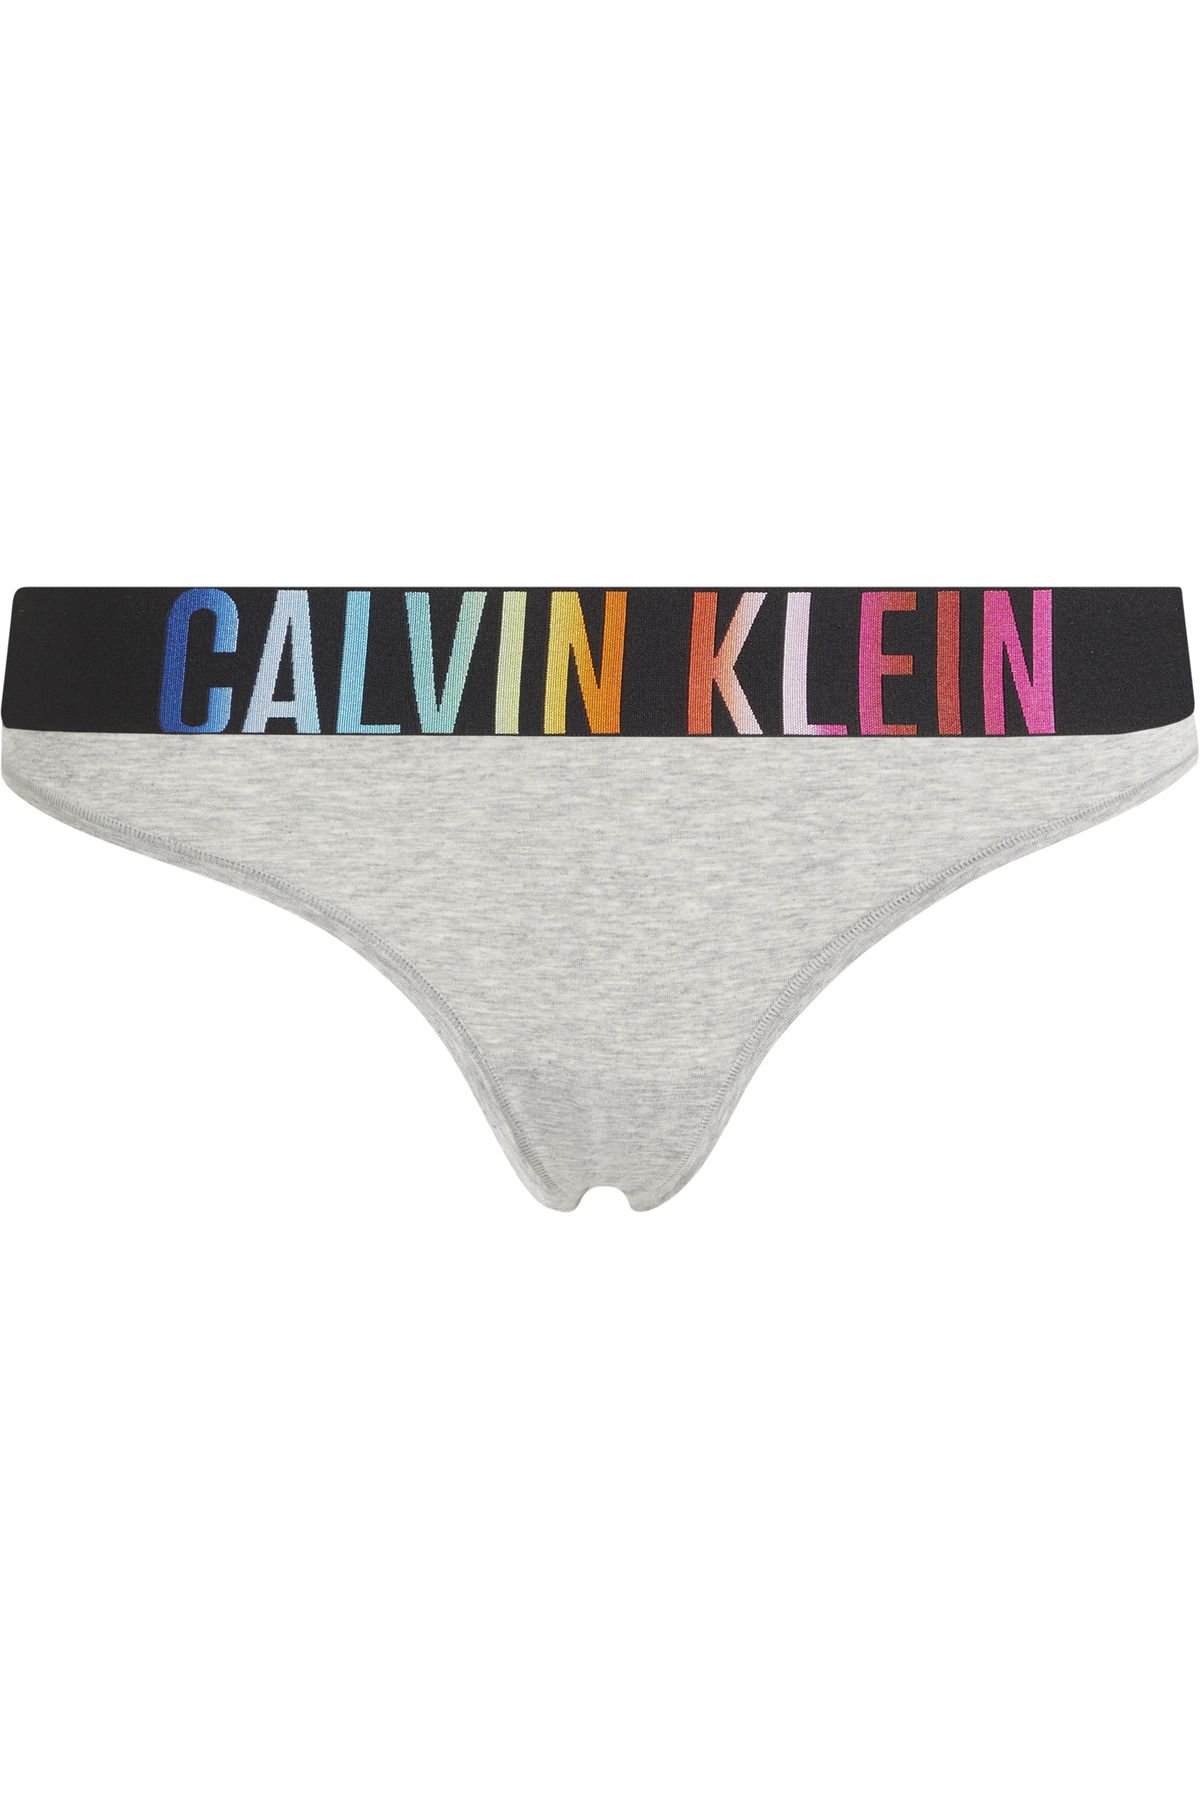 Calvin Klein Kadın Marka Logolu Elastik Bantlı Günlük Kullanıma Uygun Gri Külot 000QF7833E-P7A